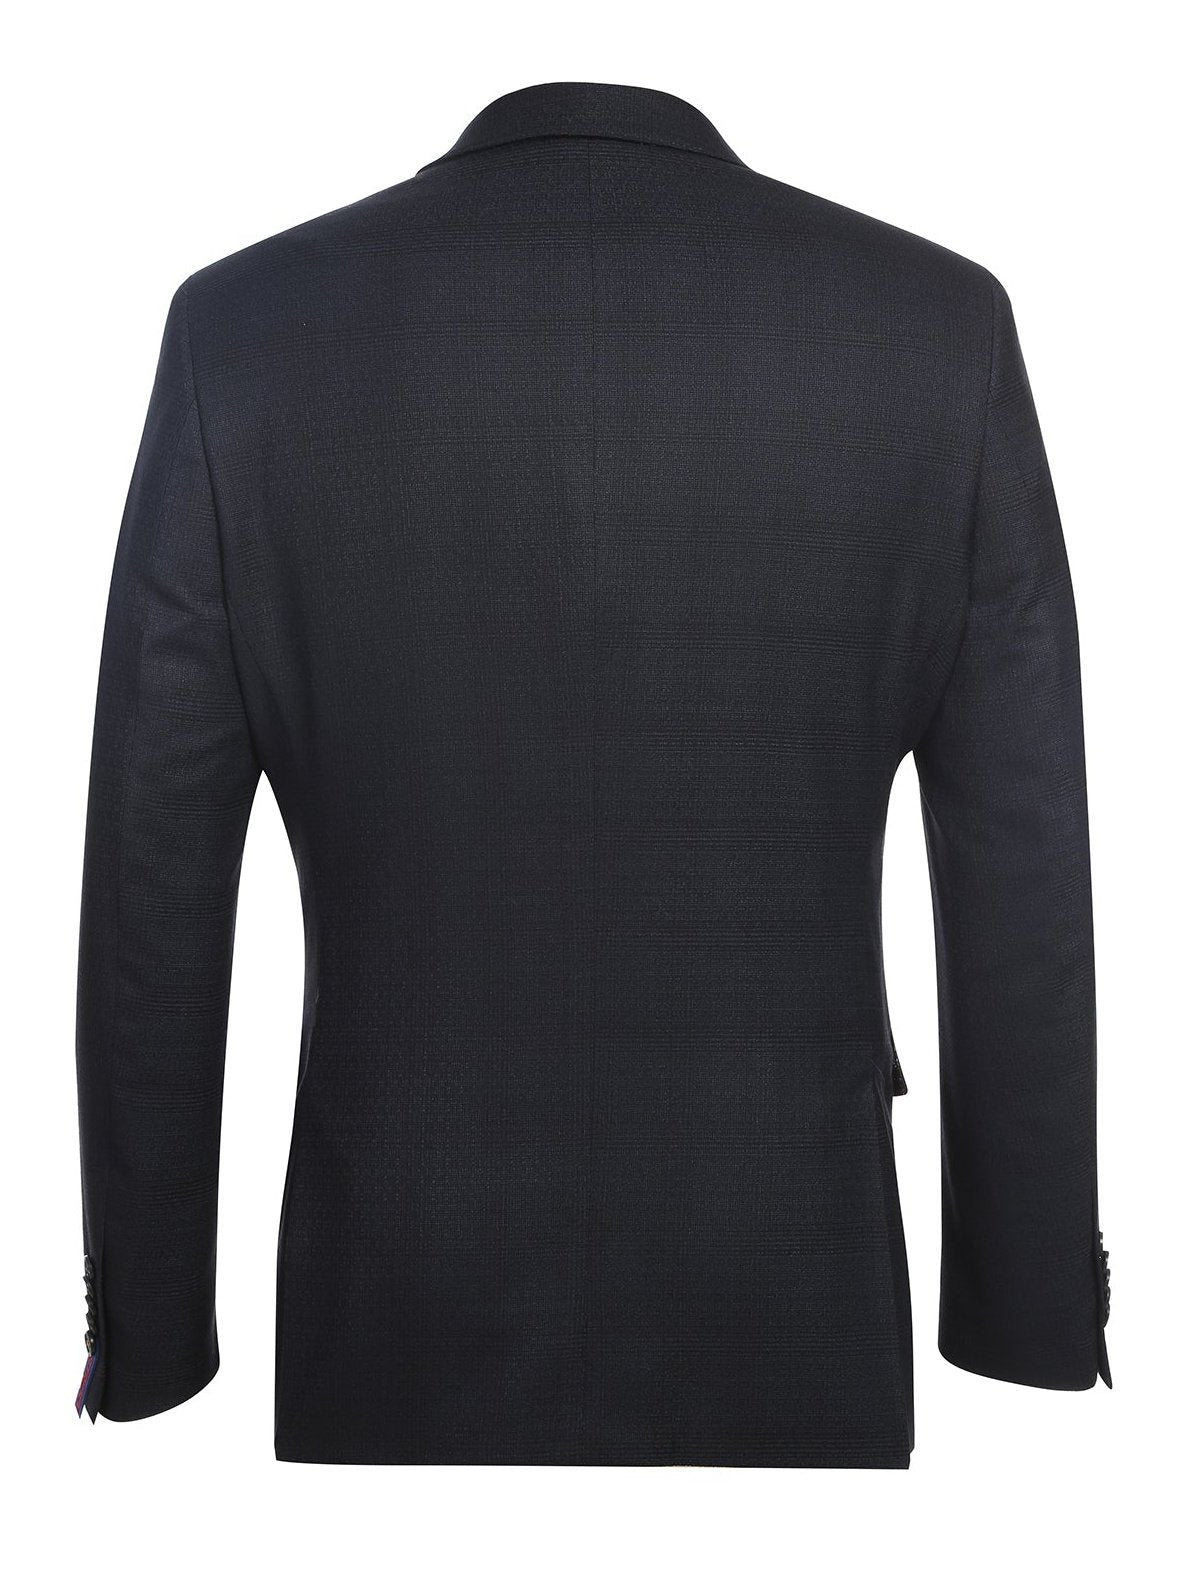 English Laundry Slim Fit Two button Black Blue Check Peak Lapel Suit